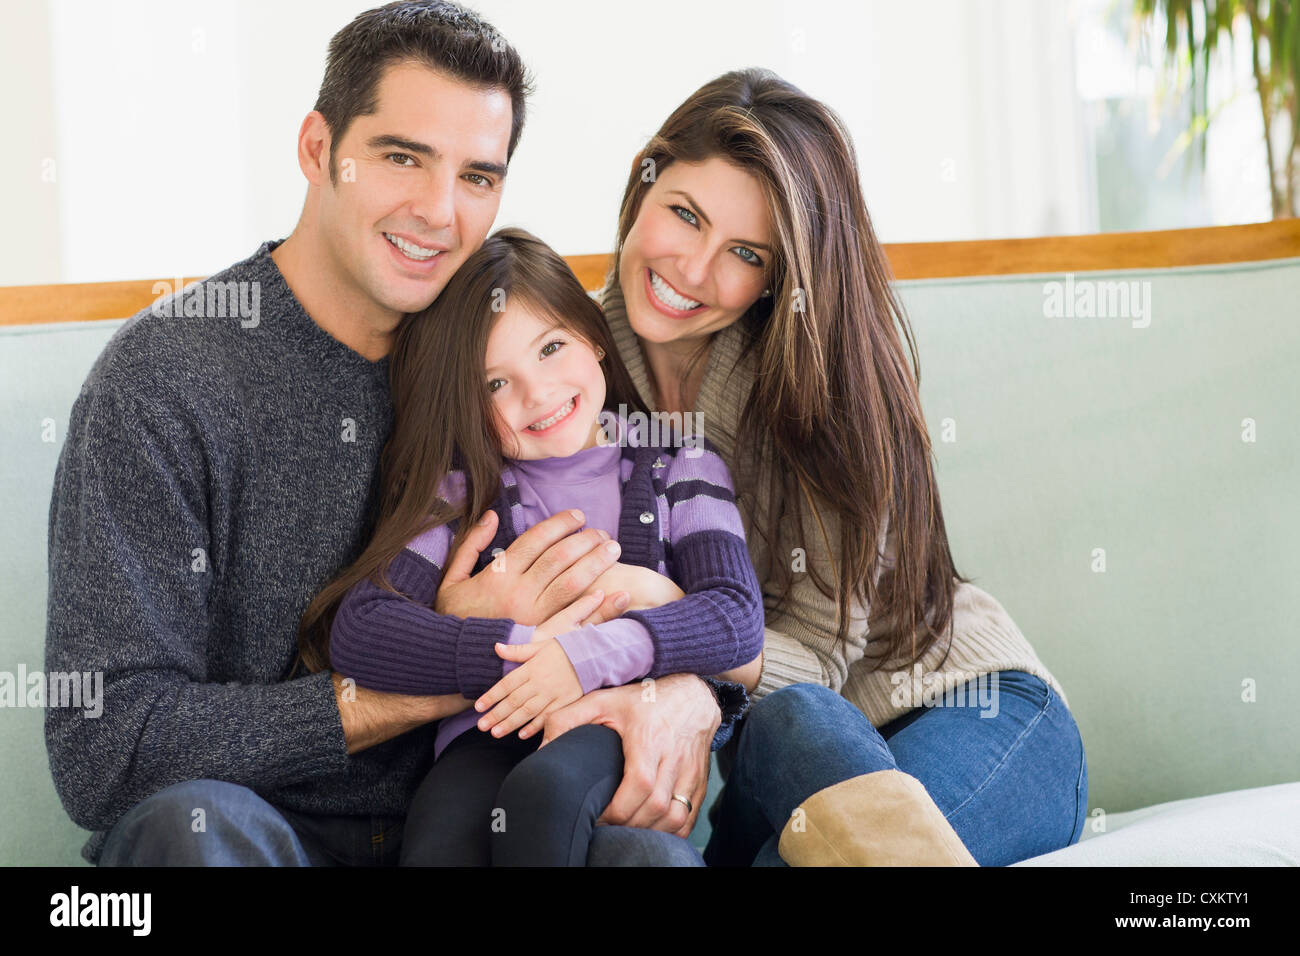 Family at Christmas, Florida, USA Stock Photo